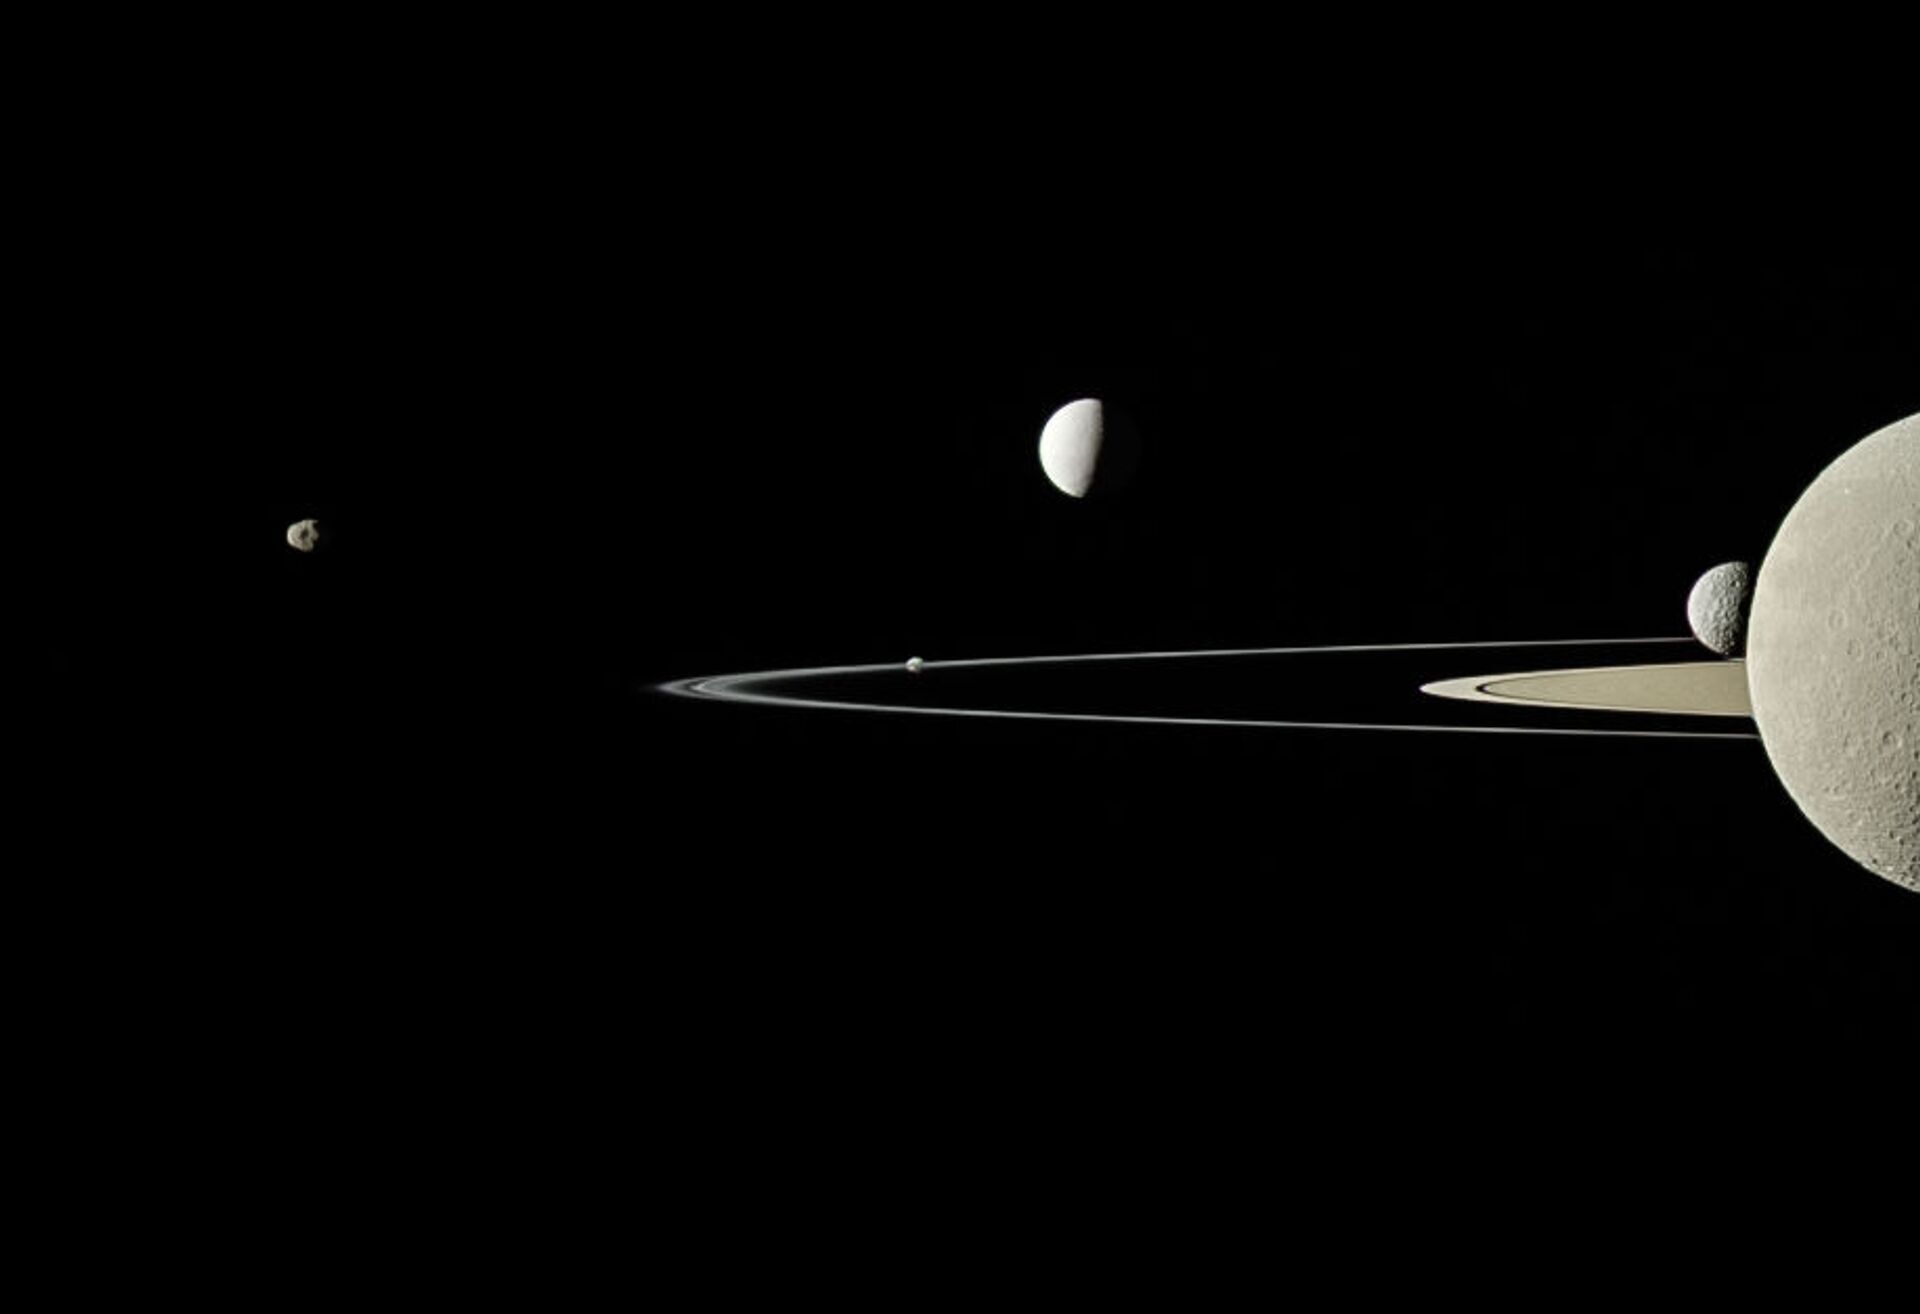 Encélado, lua de Saturno, tem correntes oceânicas semelhantes às da Terra, diz estudo - Sputnik Brasil, 1920, 27.03.2021